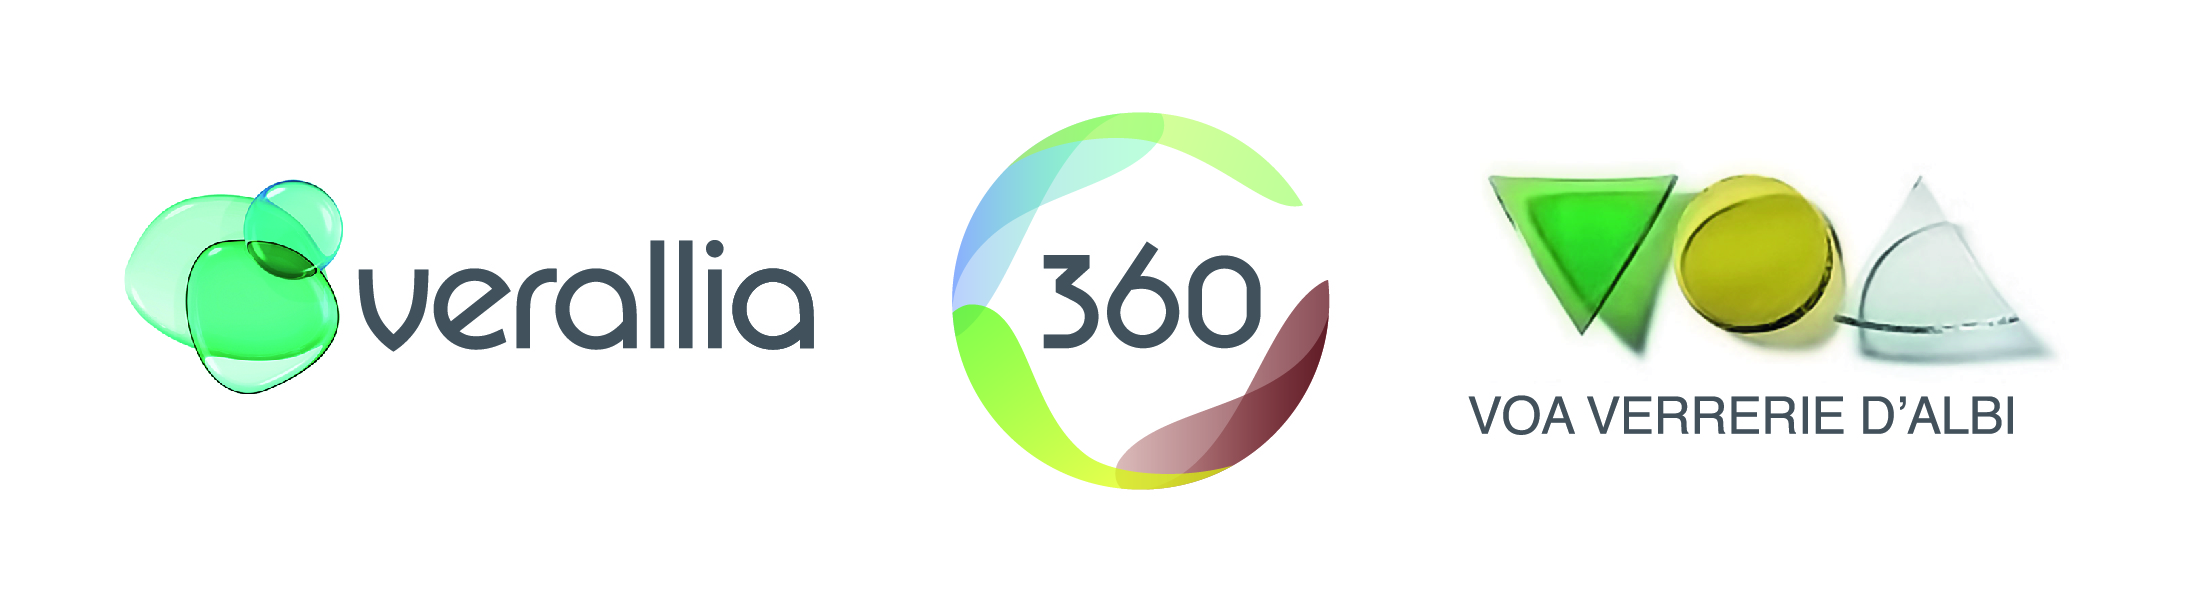 Logo verallia 360 v360voa